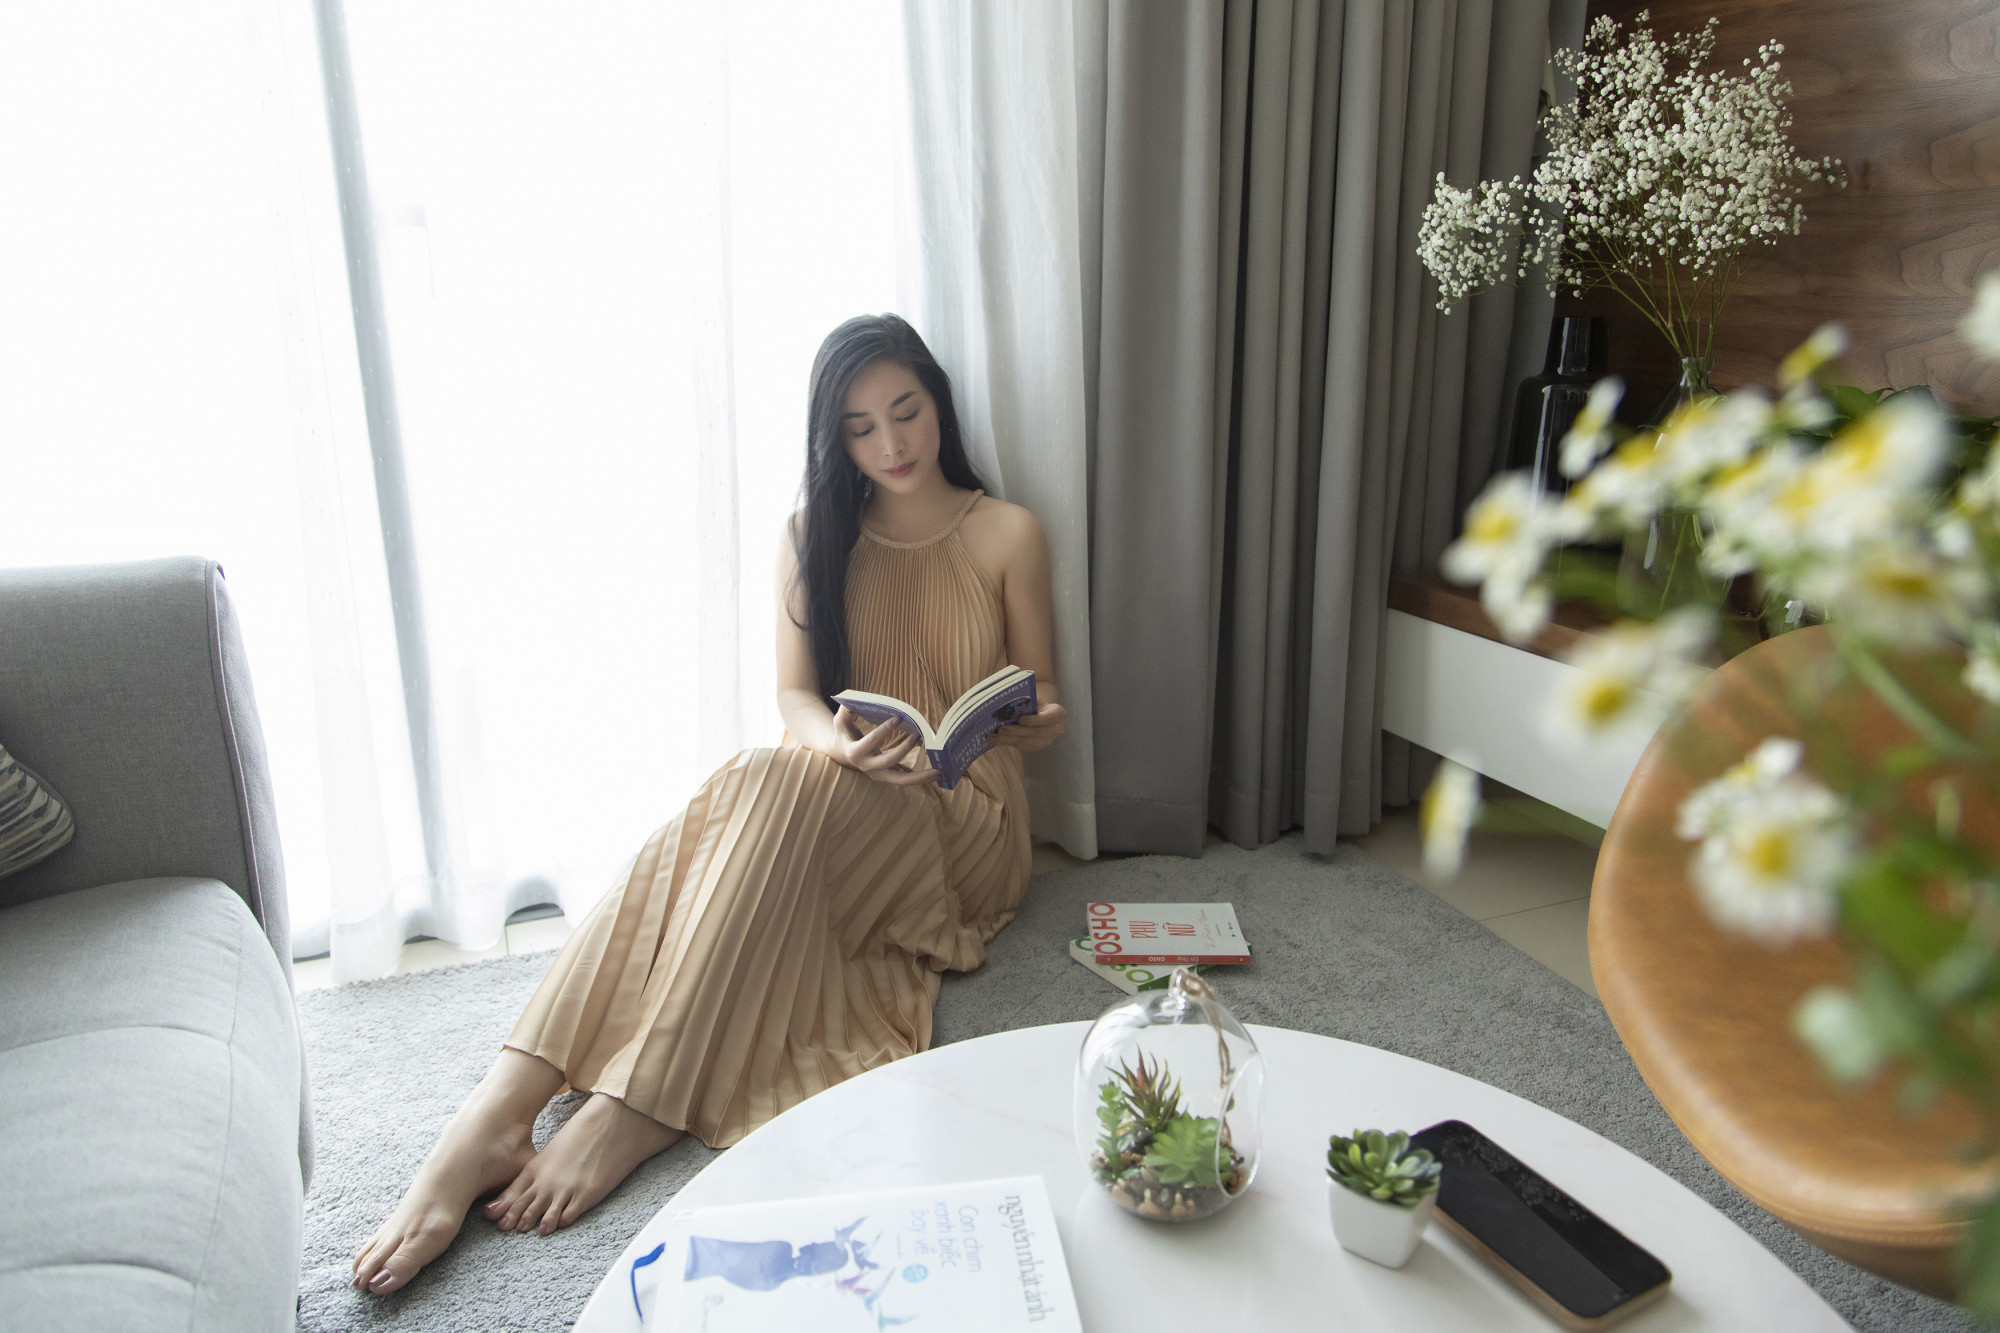 Thời gian qua, diễn viên Mai Thanh Hà ở nhà, nghiêm chỉnh chấp hành quy định giãn cách xã hội. Nữ diễn viên có nhiều hoạt động thú vị để mỗi ngày không buồn chán như: đọc sách, nấu ăn, xem phim...